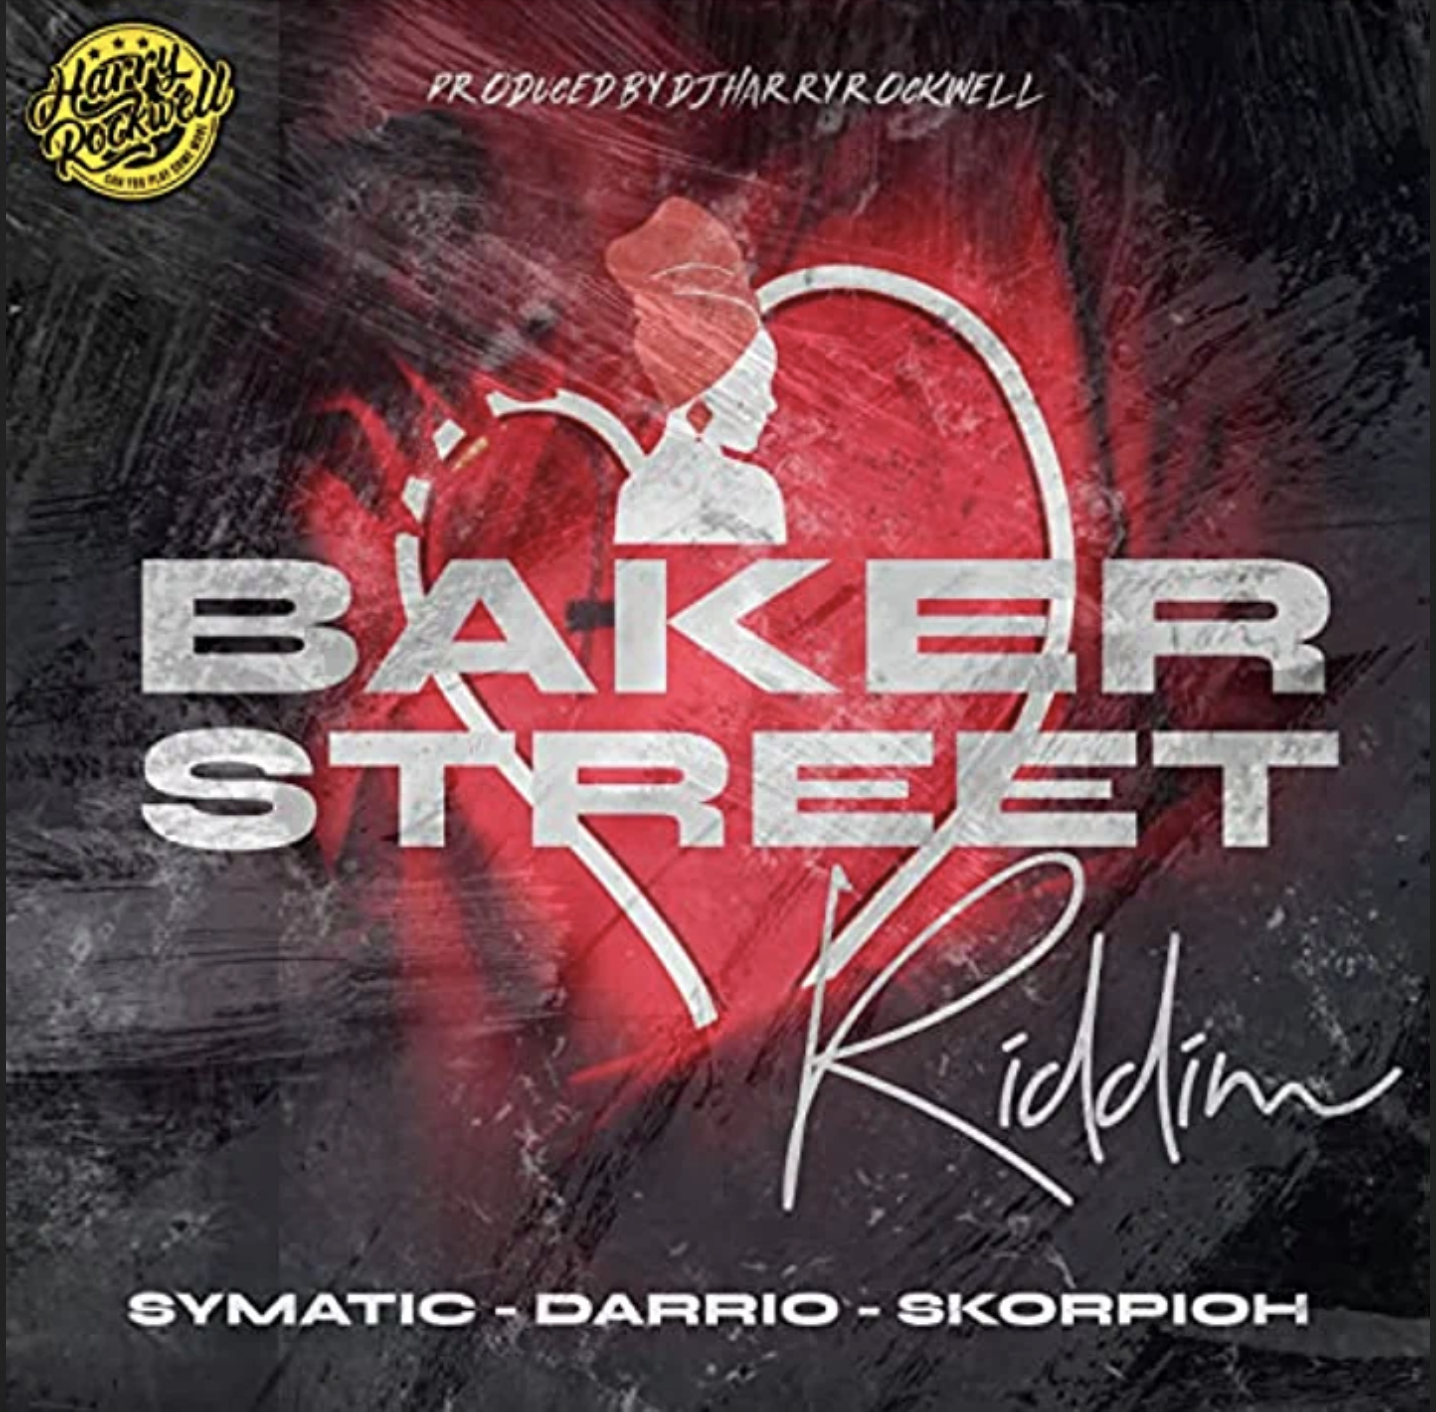 Bakerstreet Riddim Selection